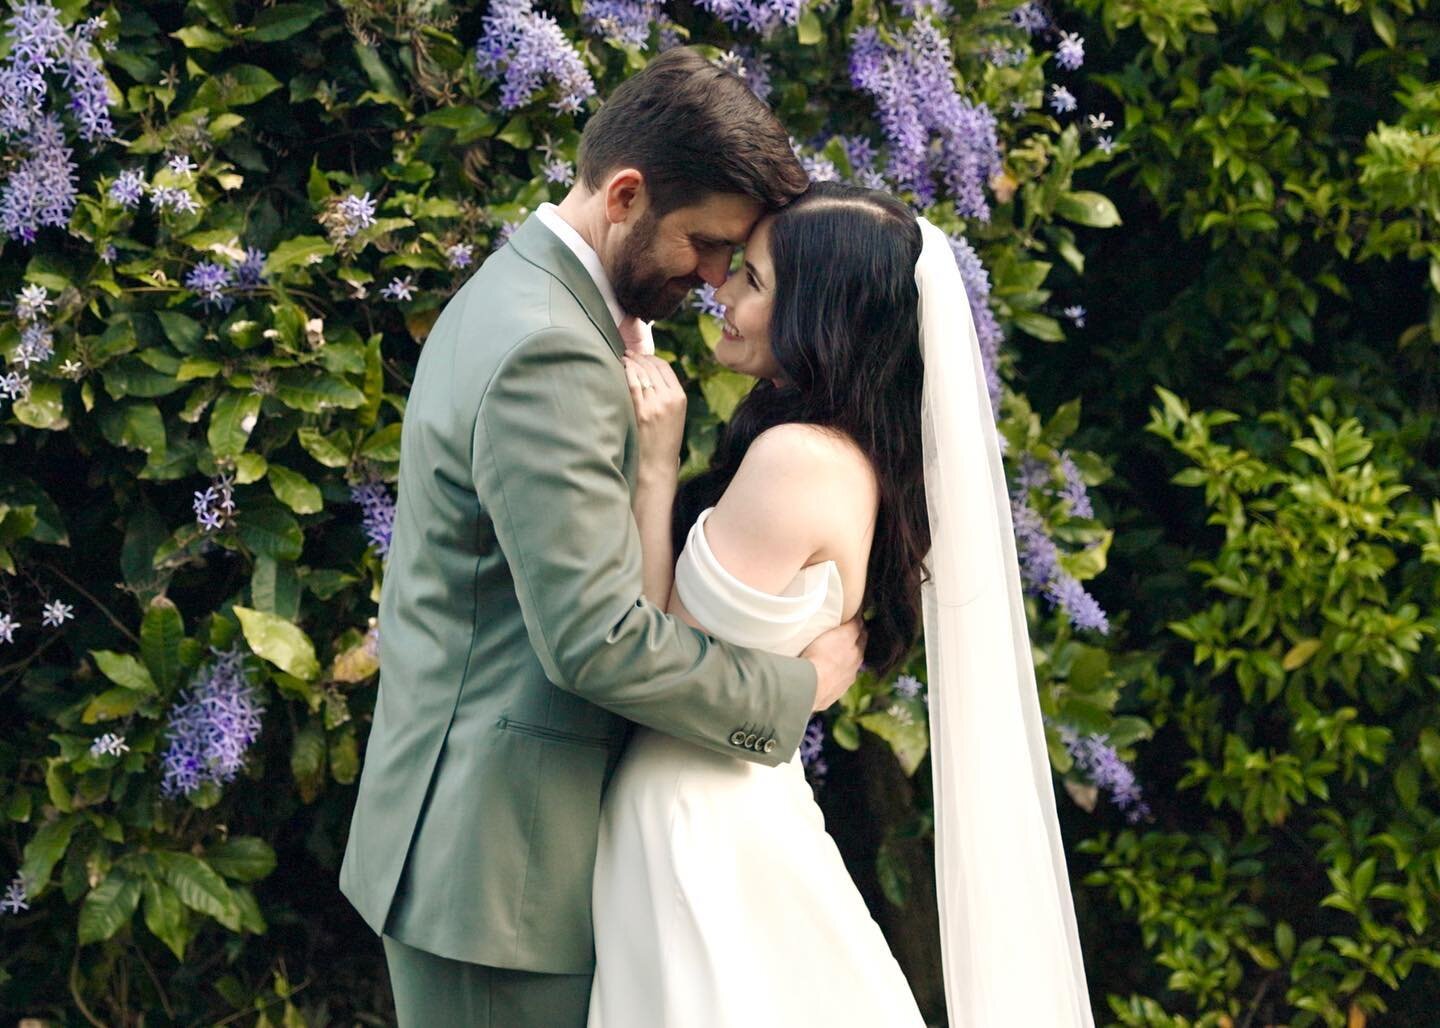 The garden wedding of our dreams ✨